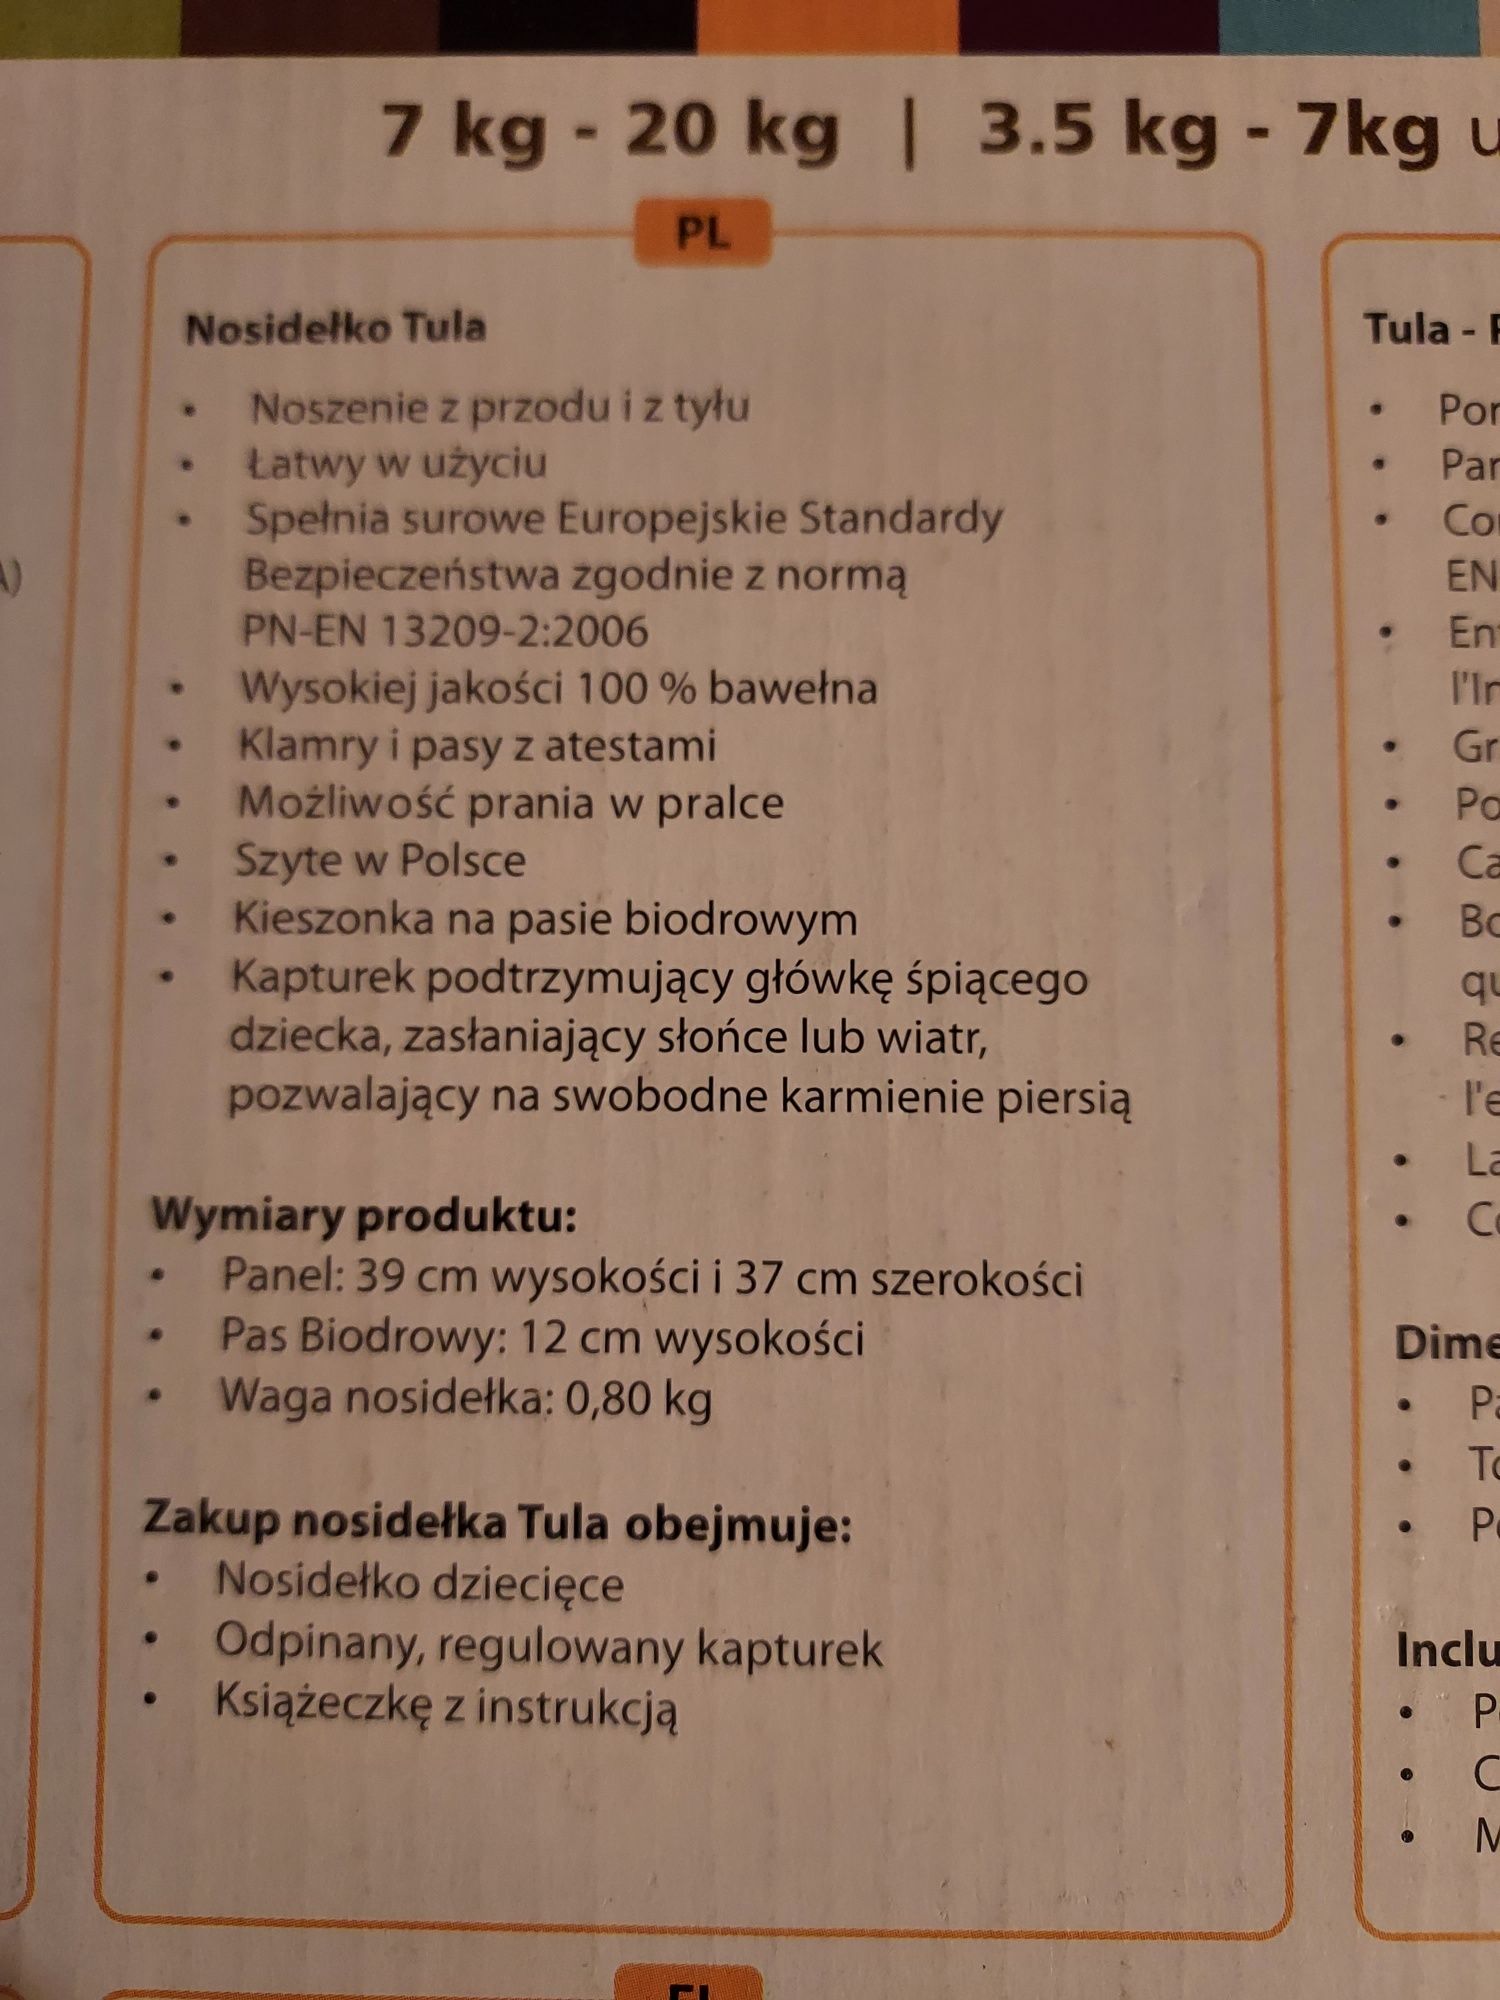 TULA Nosidło (220 zł)+ wkładka dla noworodka (50 zł)